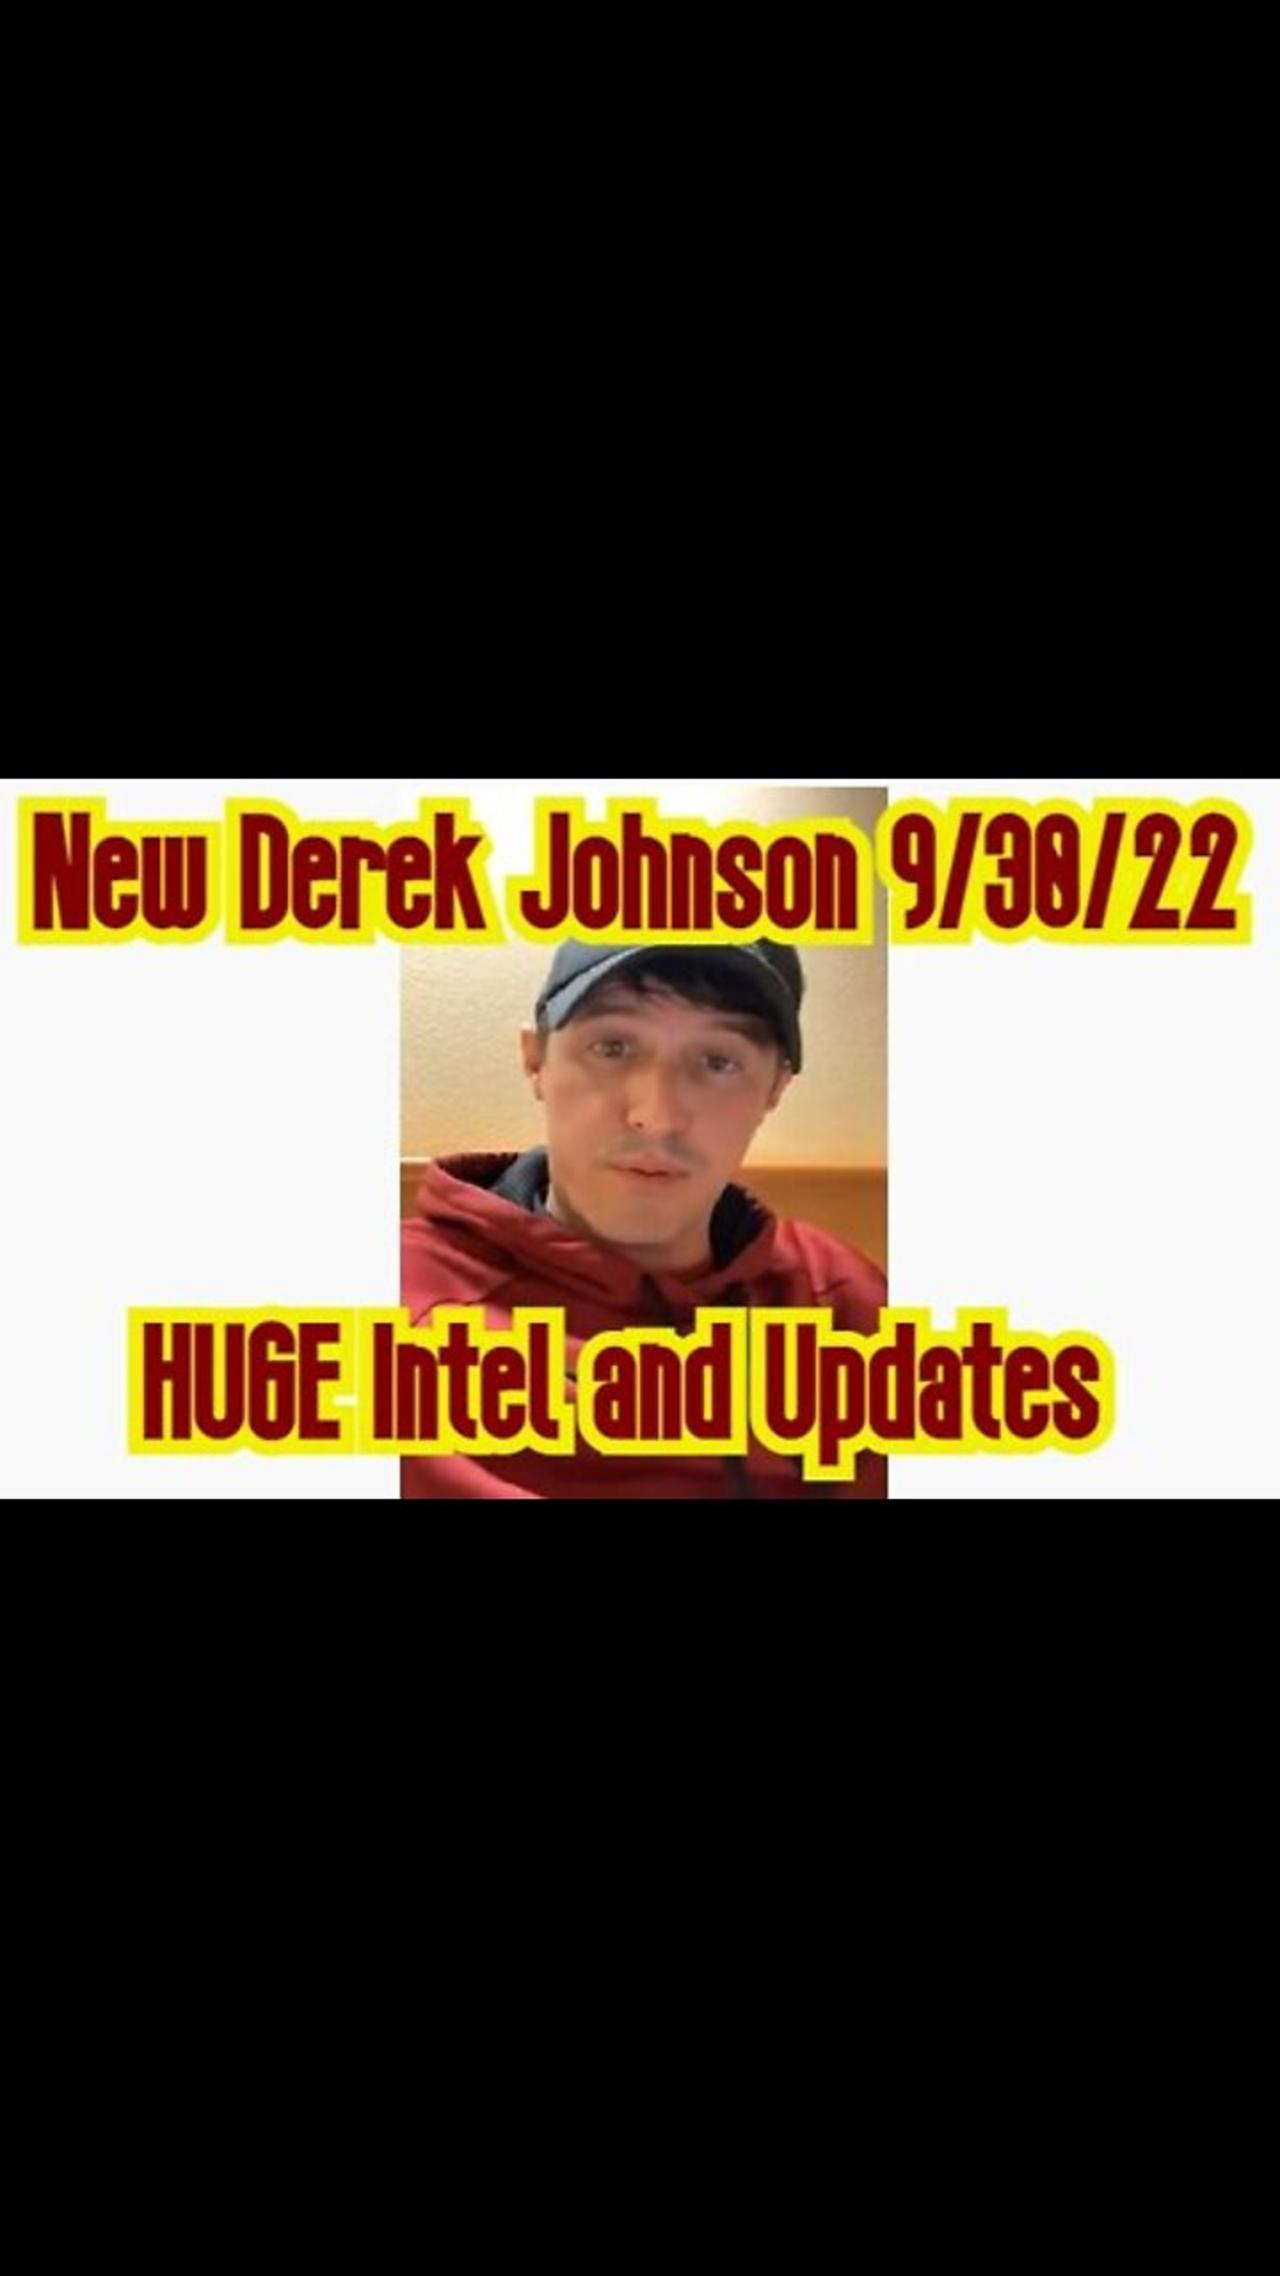 New Derek Johnson HUGE Intel and Updates 9/30/22